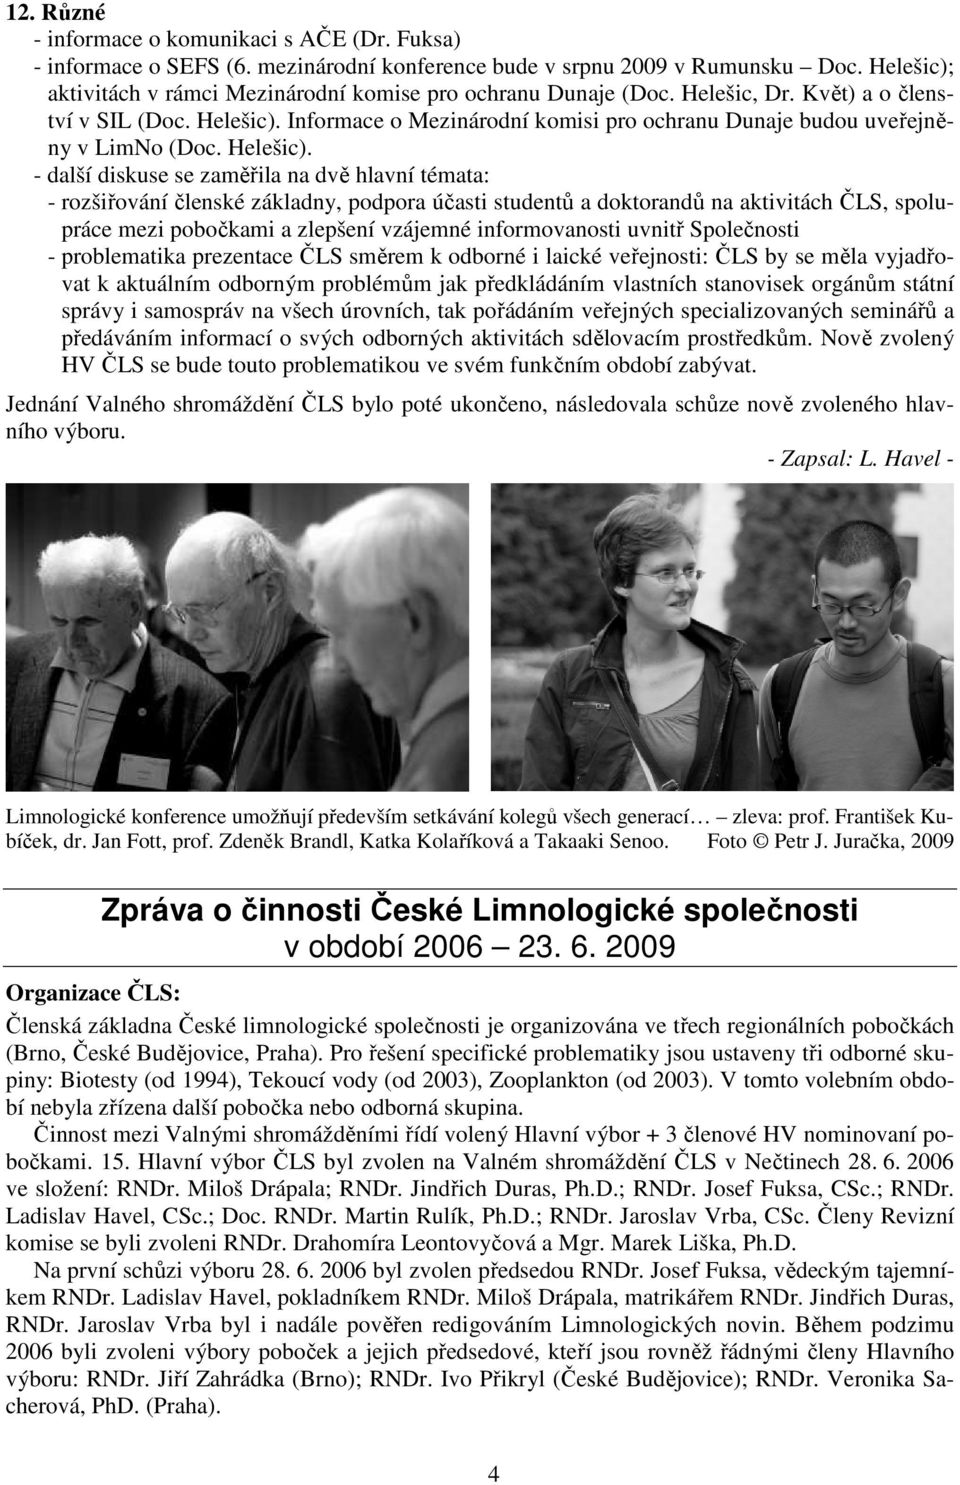 Informace o Mezinárodní komisi pro ochranu Dunaje budou uveřejněny v LimNo (Doc. Helešic).